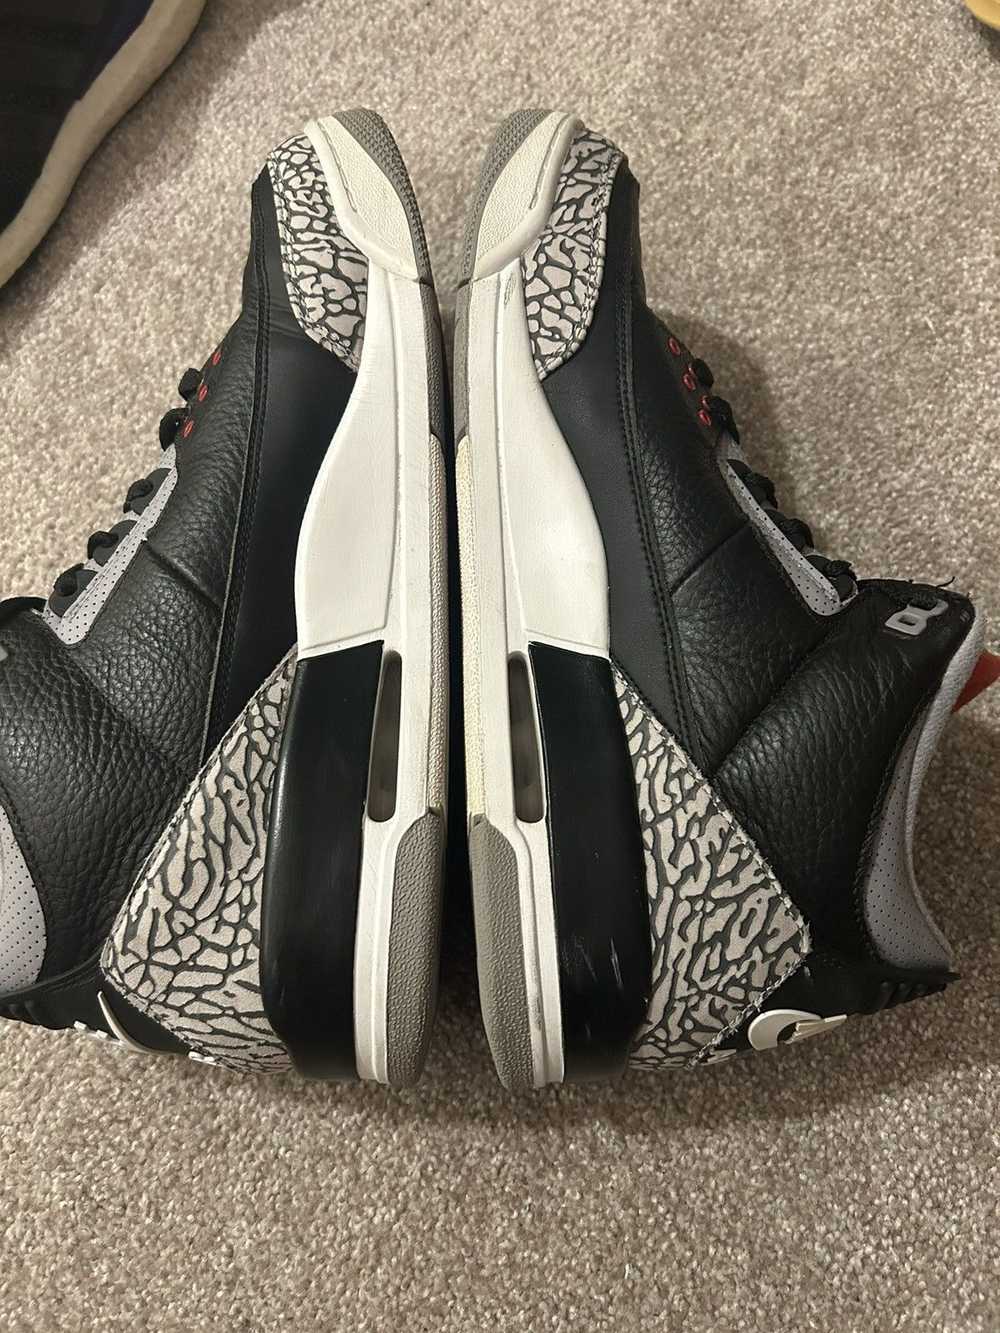 Jordan Brand Nike air Jordan black cement 3s 2018 - image 6